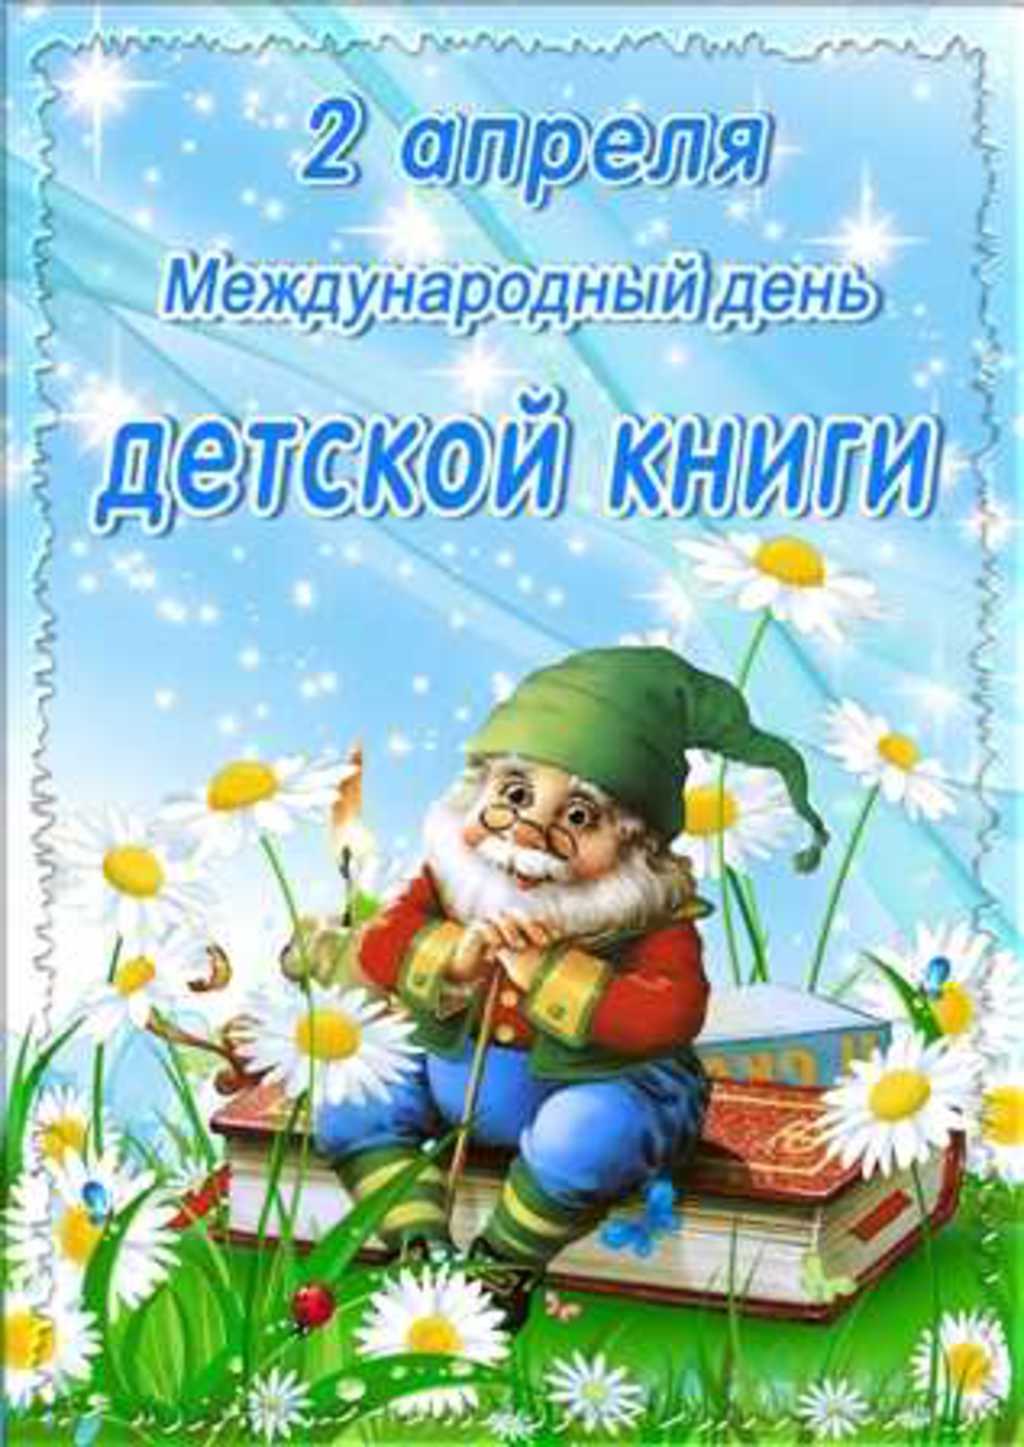 Новые Милые смс  календарь праздников всемирный день детской книги школьнику